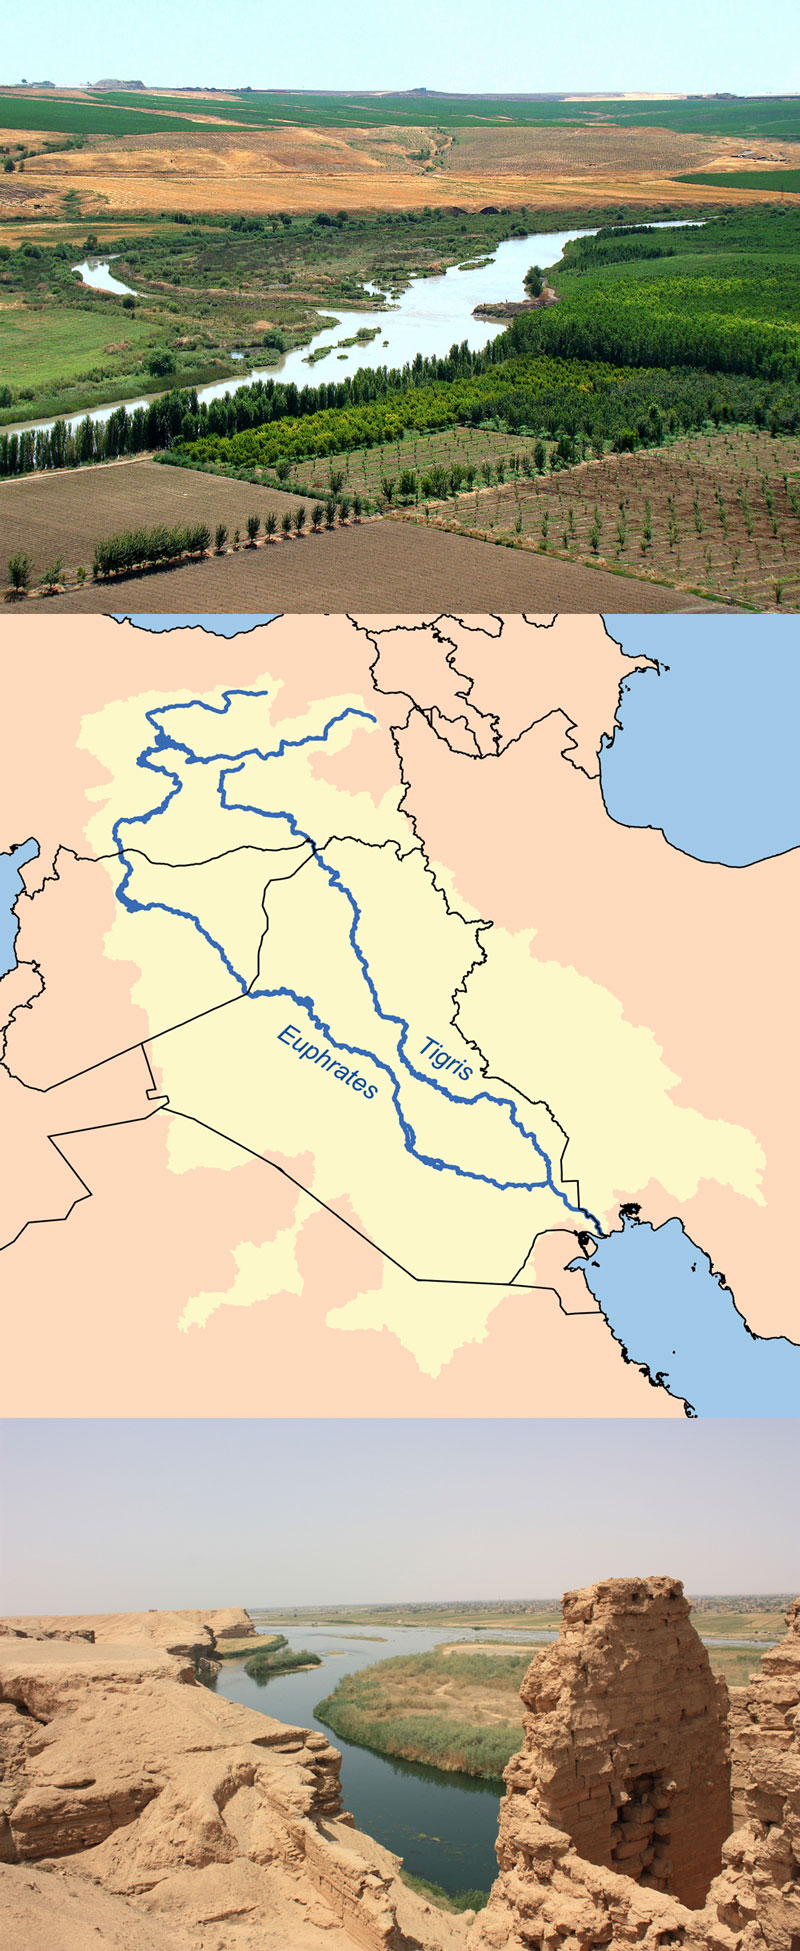 Fakta: Tigris og Eufrat er to elver i Irak.